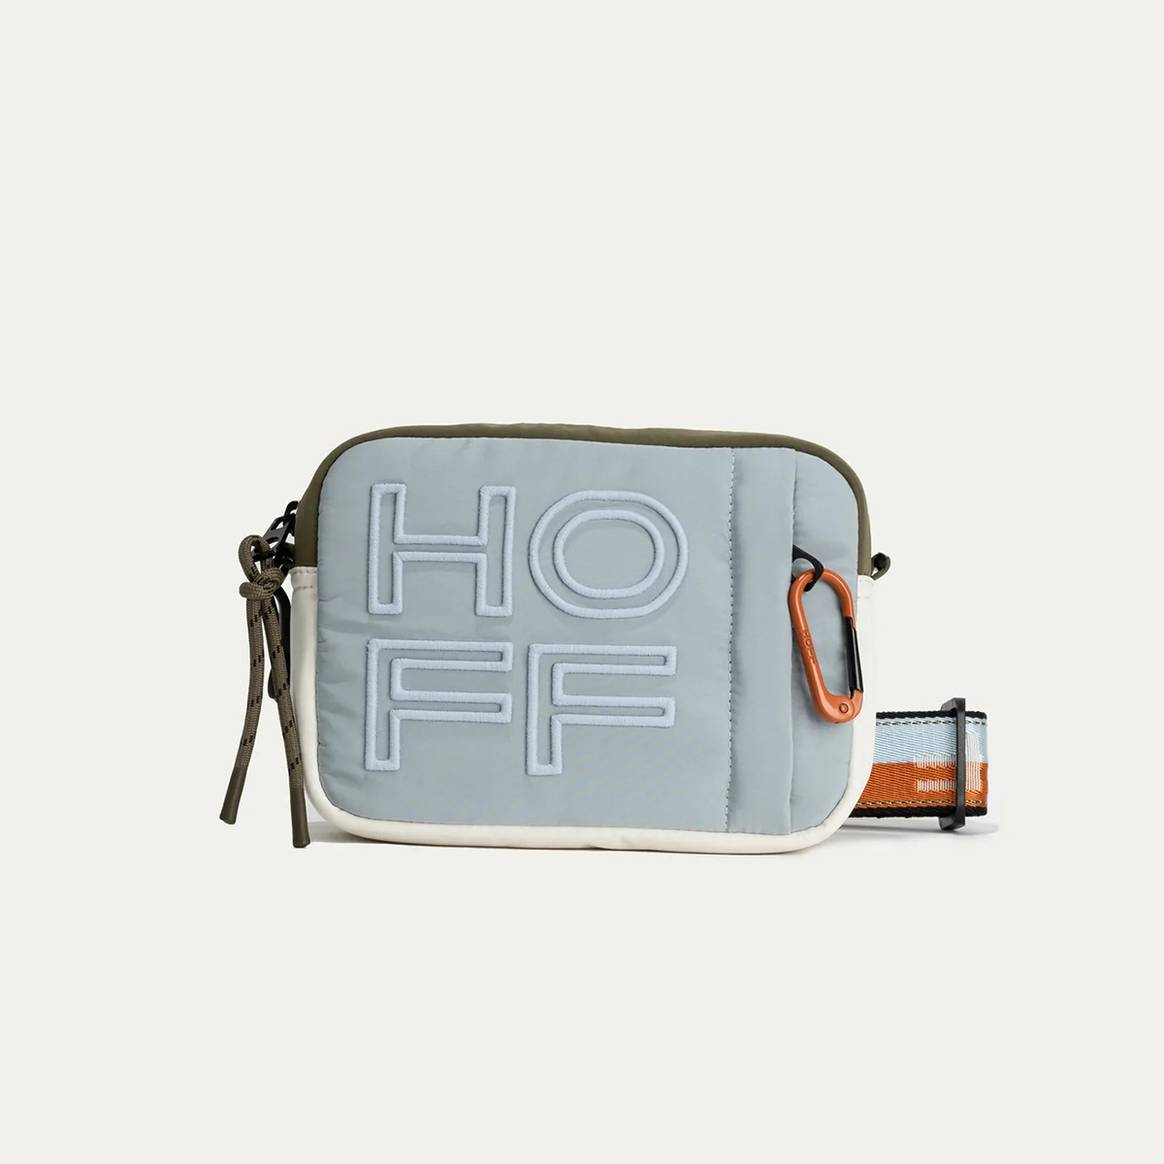 Photo Credits: Modelo de bolso de la nueva y primera colección de bolsos de Hoff. Hoff, página oficial.